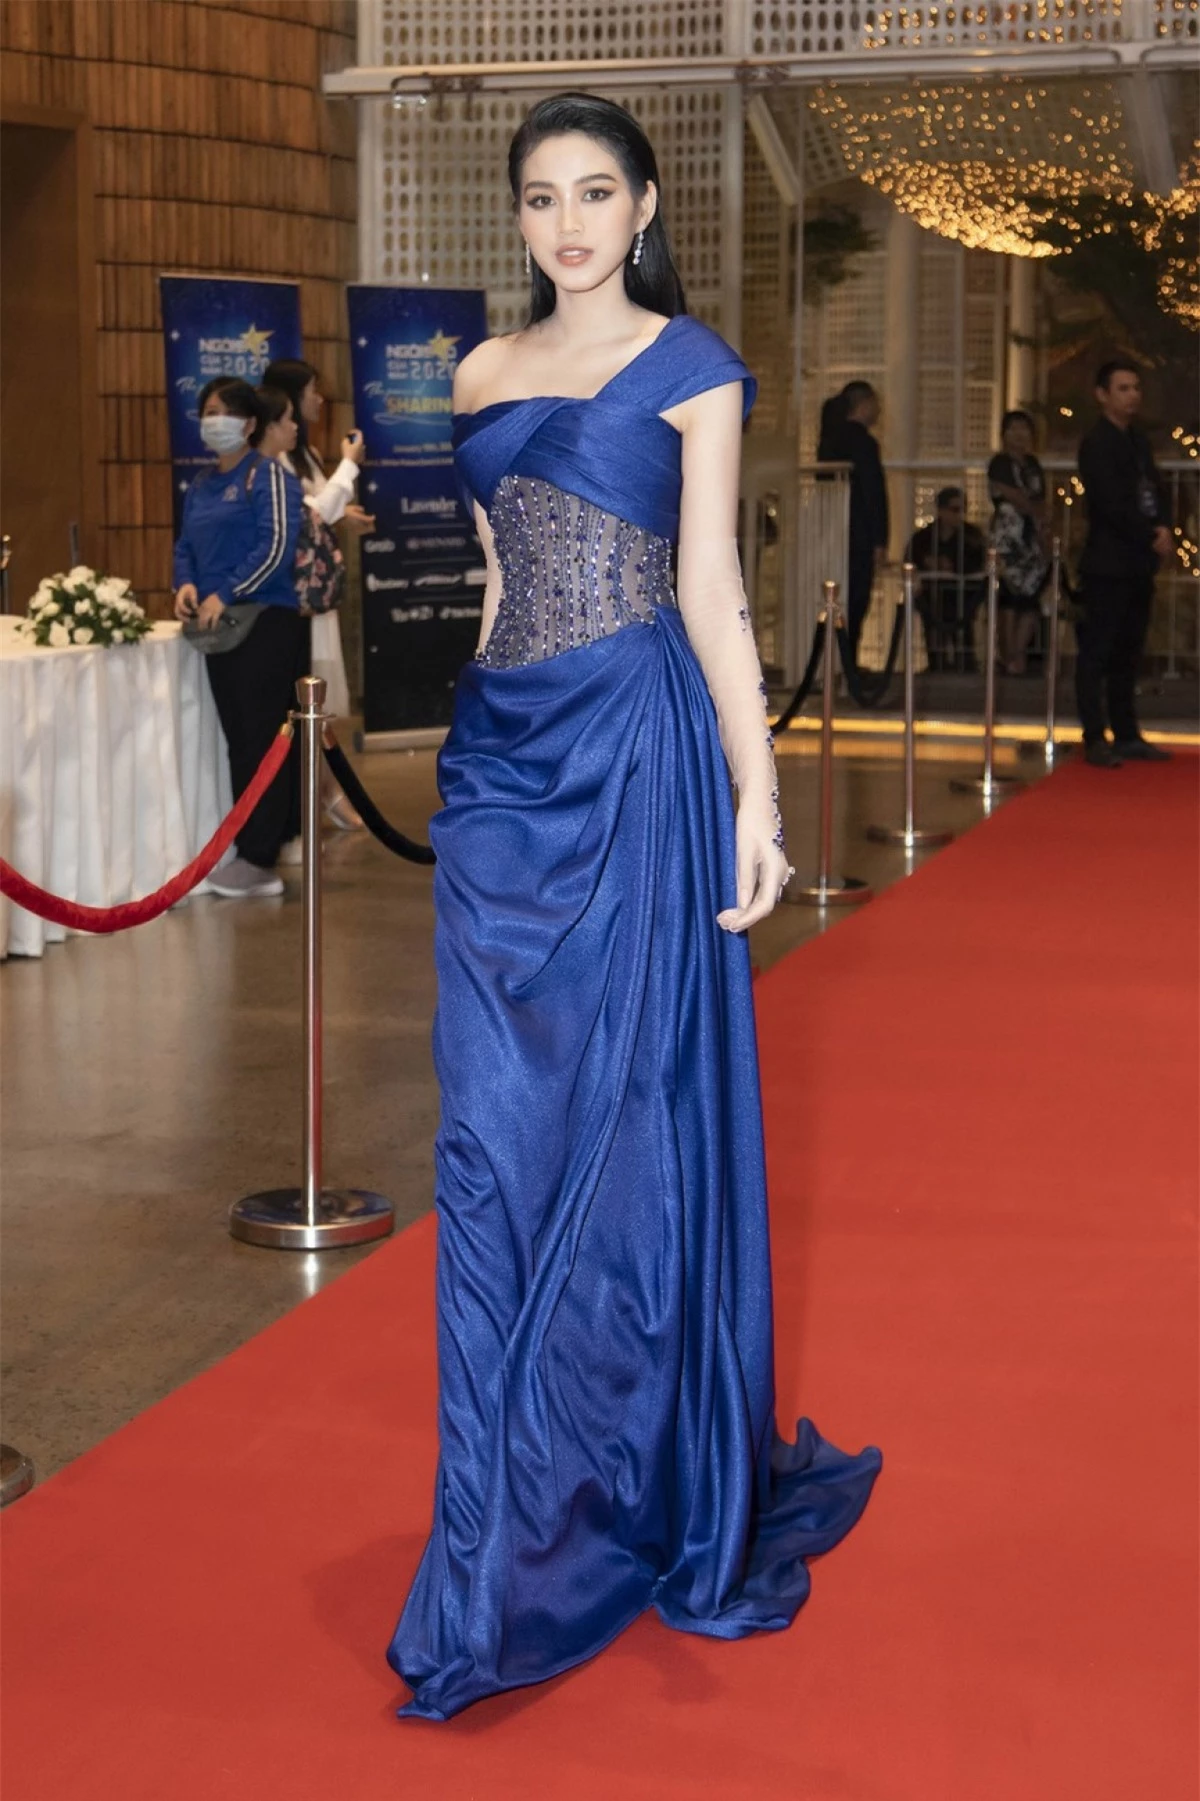 Hoa hậu Đỗ Thị Hà diện bộ đầm lụa xanh lộng lẫy, quyến rũ.